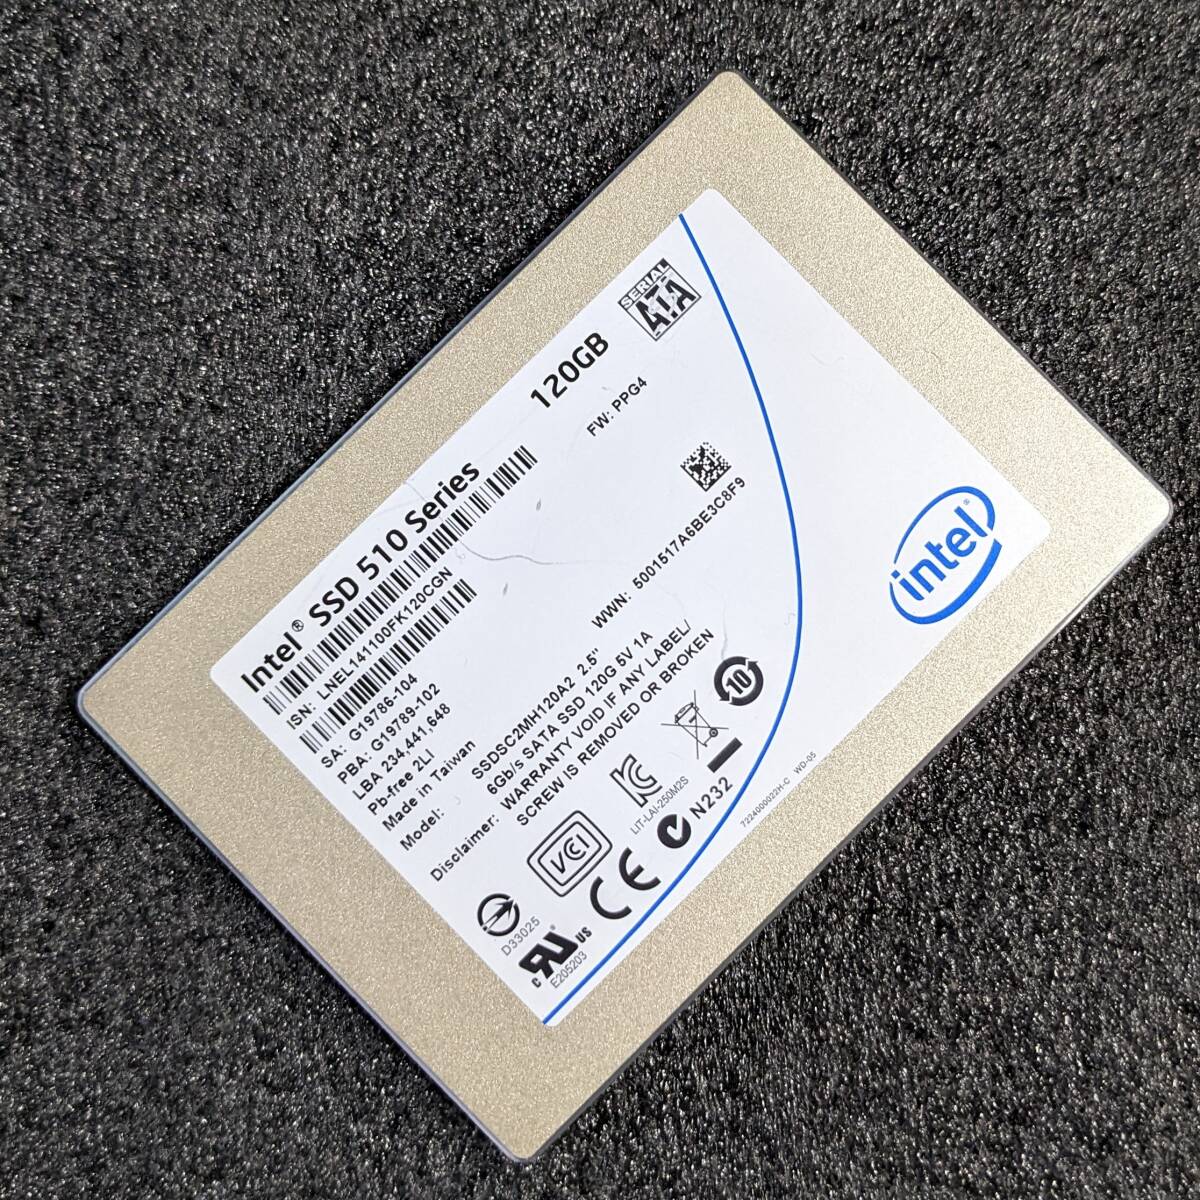 【中古】Intel SSD 510 Series 120GB SSDSC2MH120A2 [2.5インチ SATA3 9mm厚 MLC]_画像1